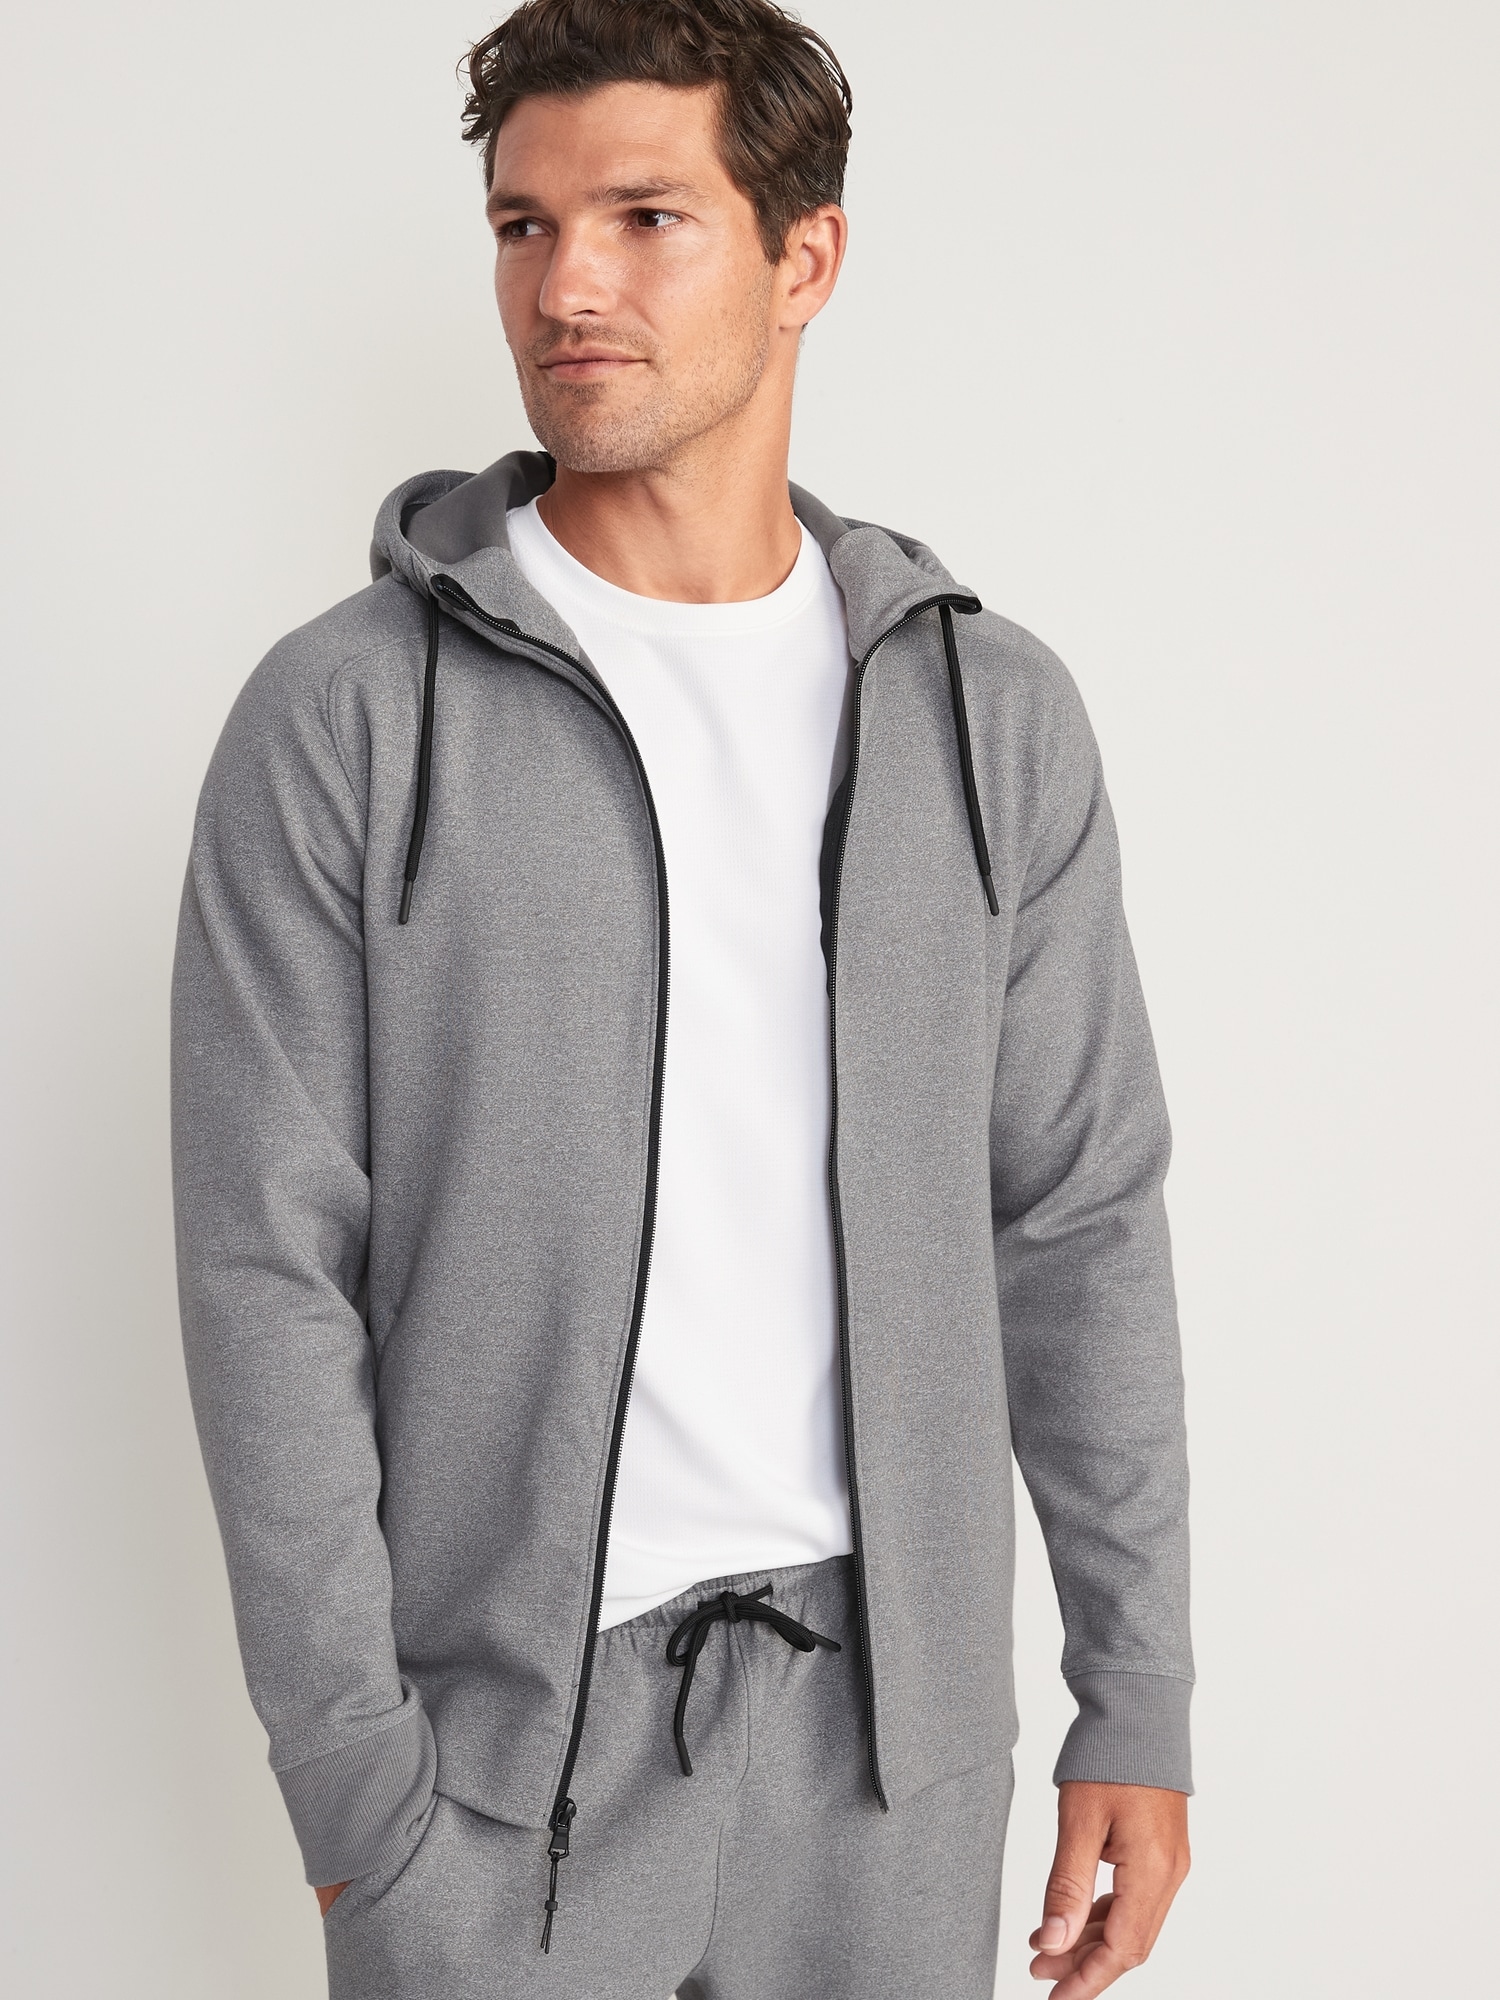 Old Navy Dynamic Fleece Hidden-Pocket Zip-Front Hoodie for Men gray. 1